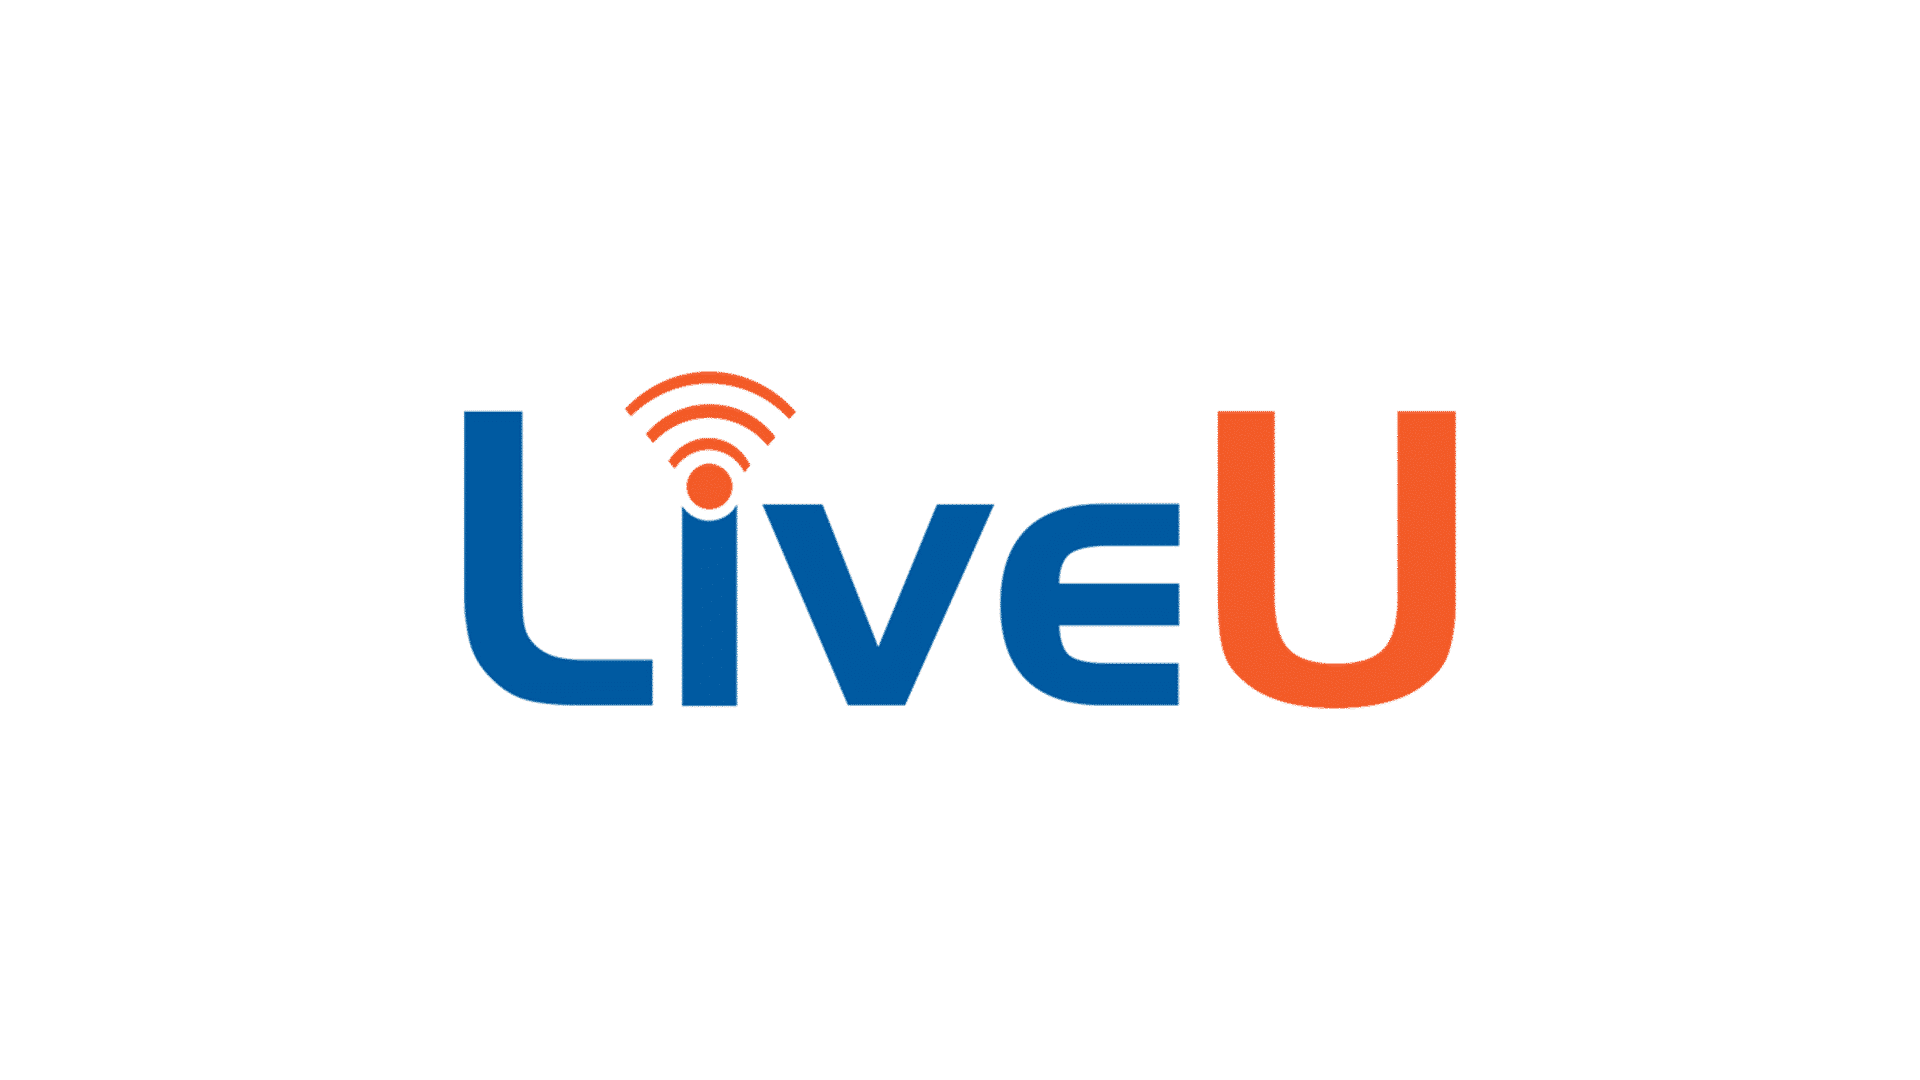 Live-U logo